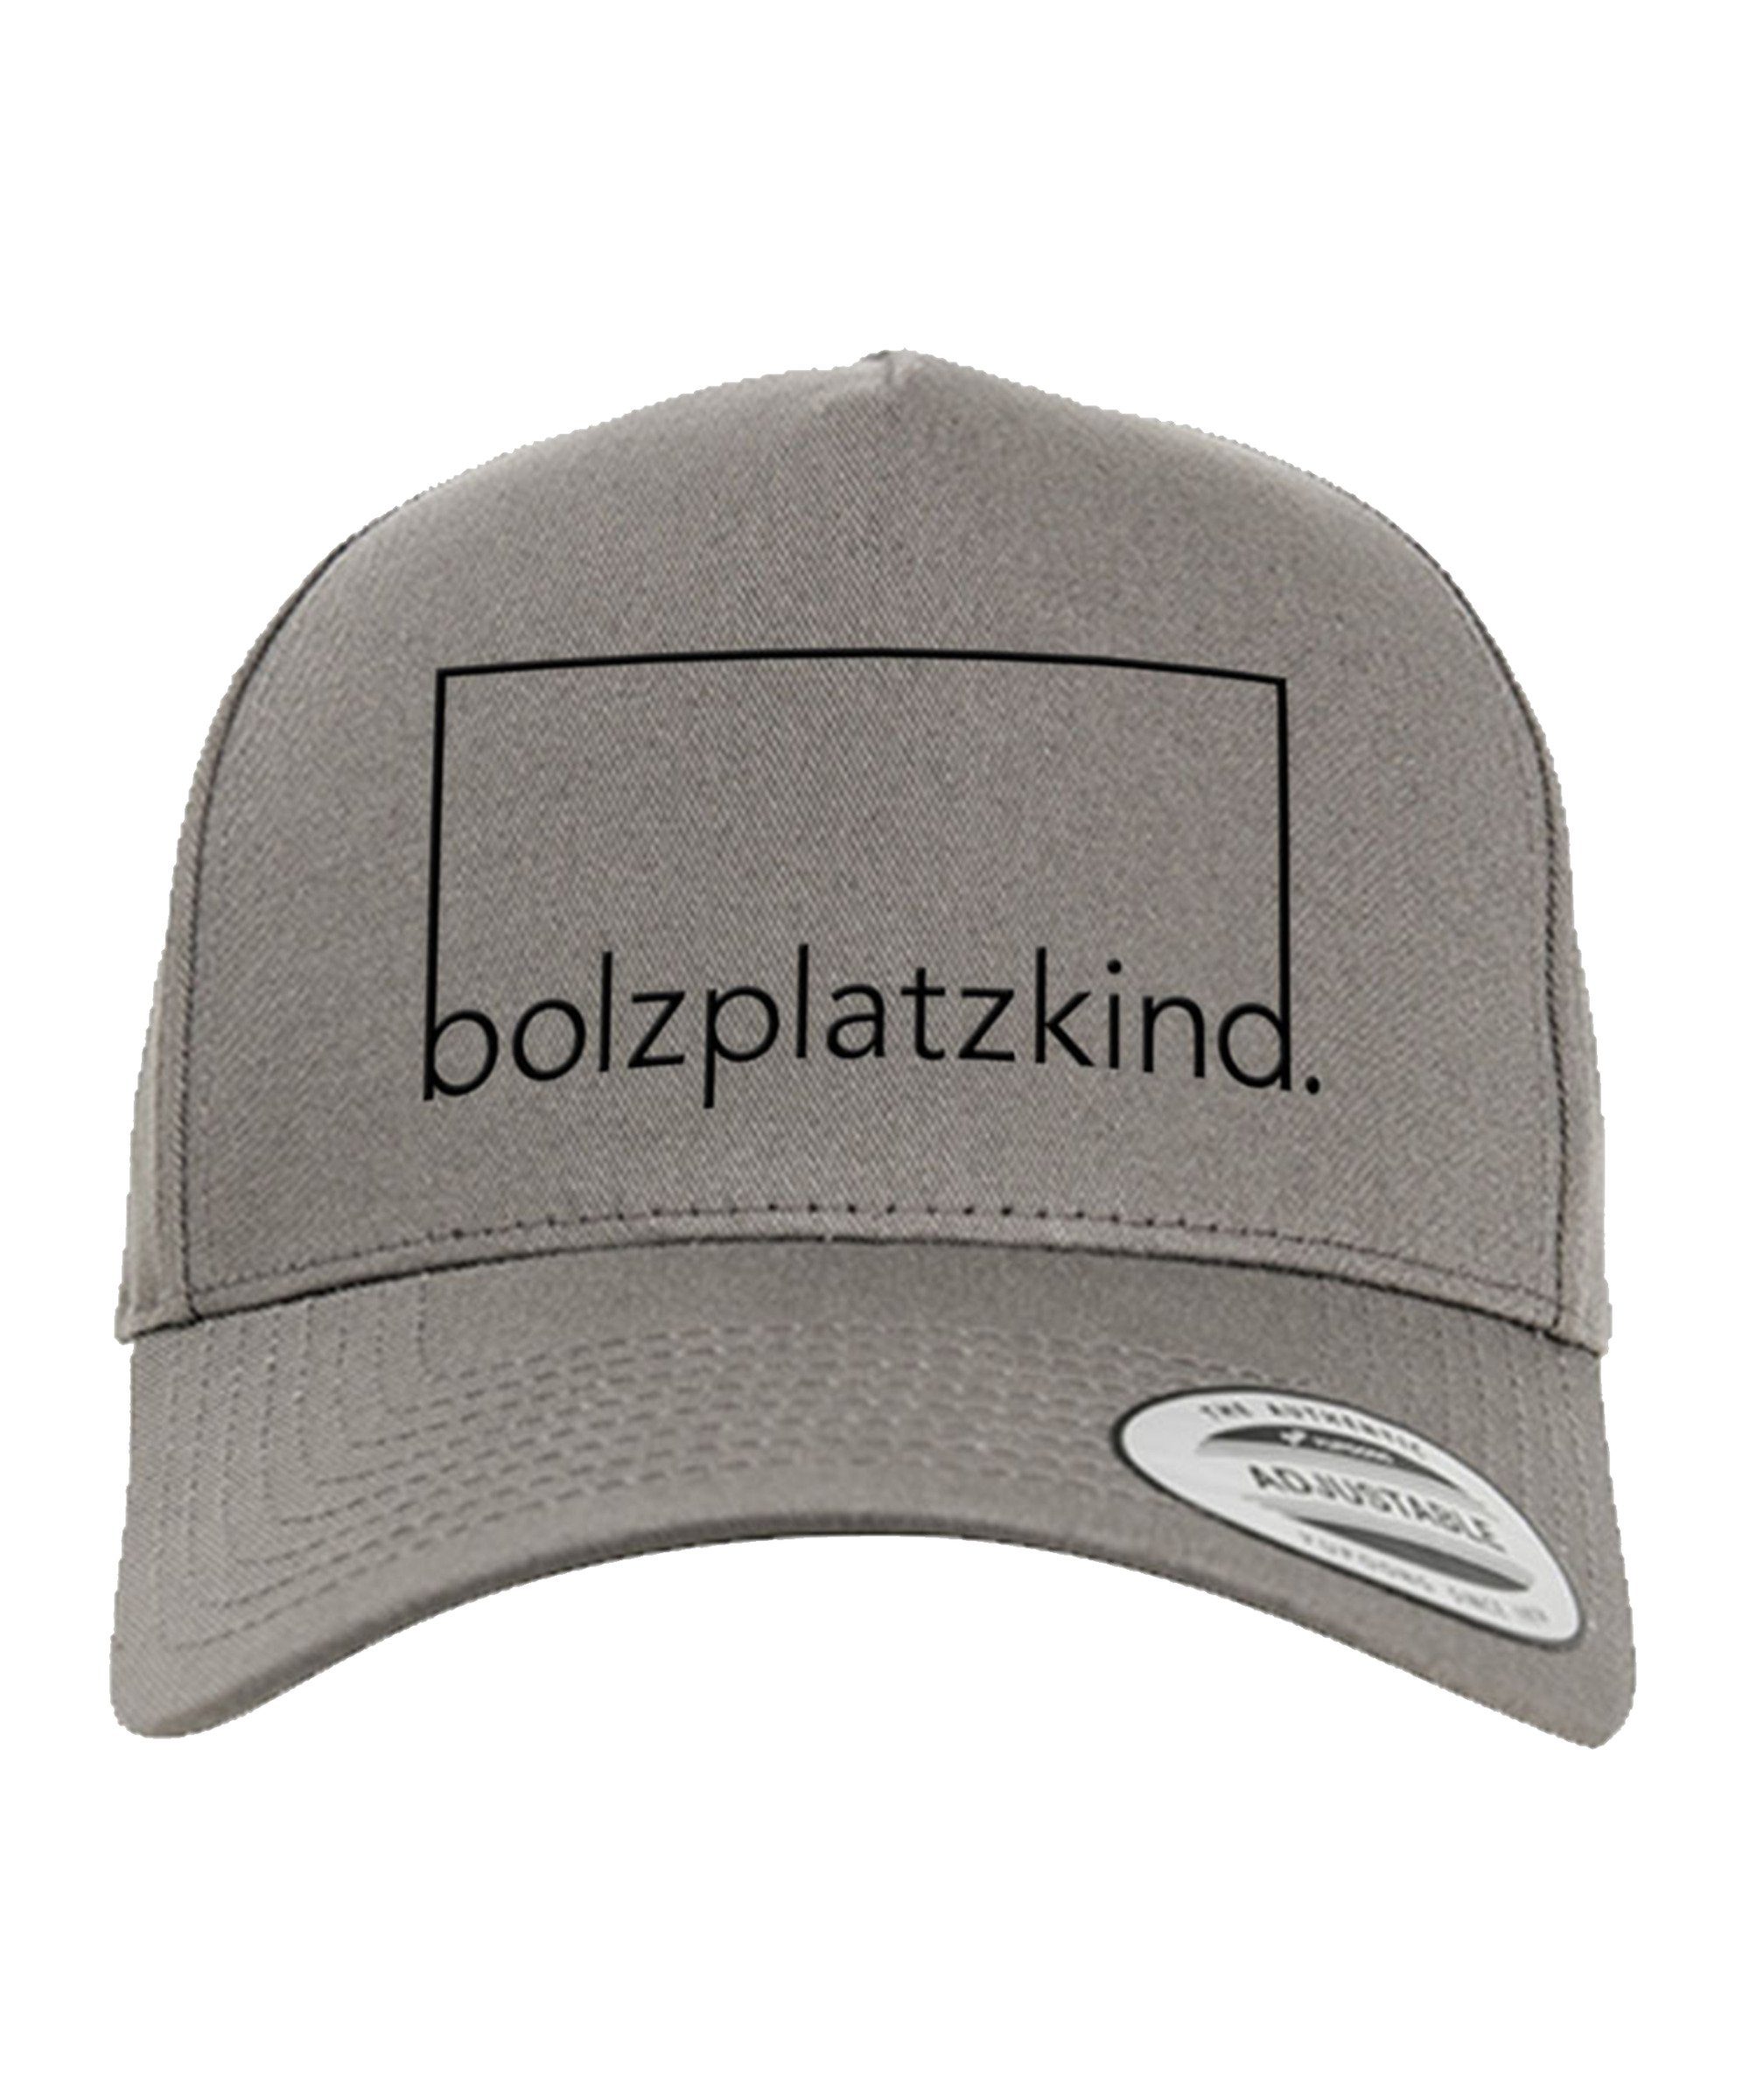 Bolzplatzkind Curved Cap Snapback Cap Baseball